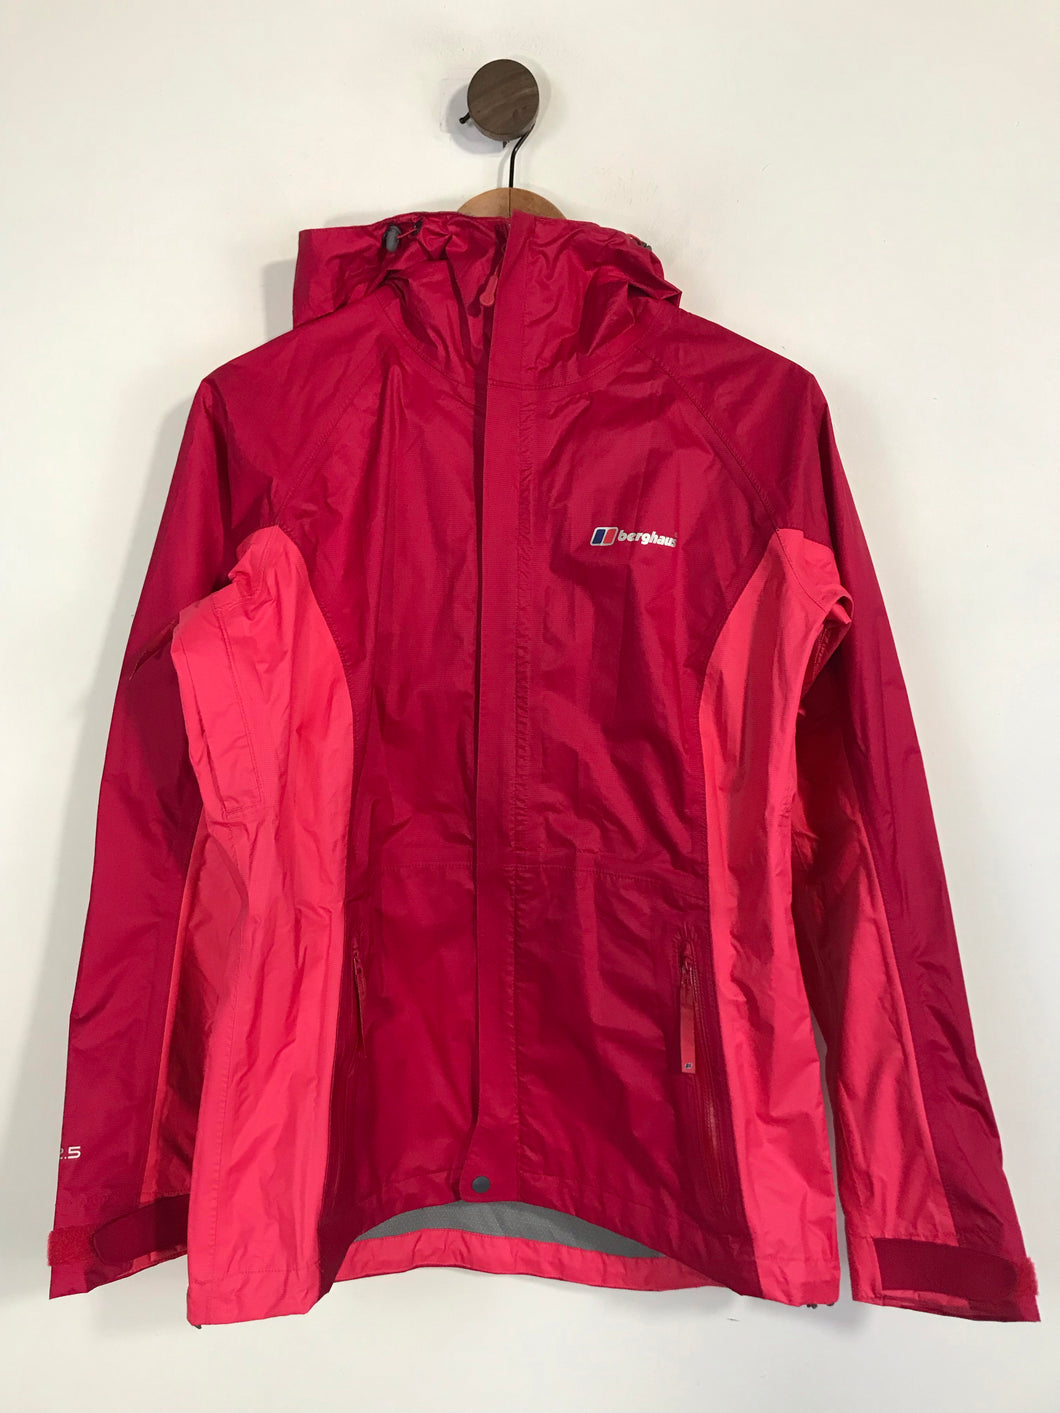 Berghaus Women's Jacket Raincoat | UK10 | Pink